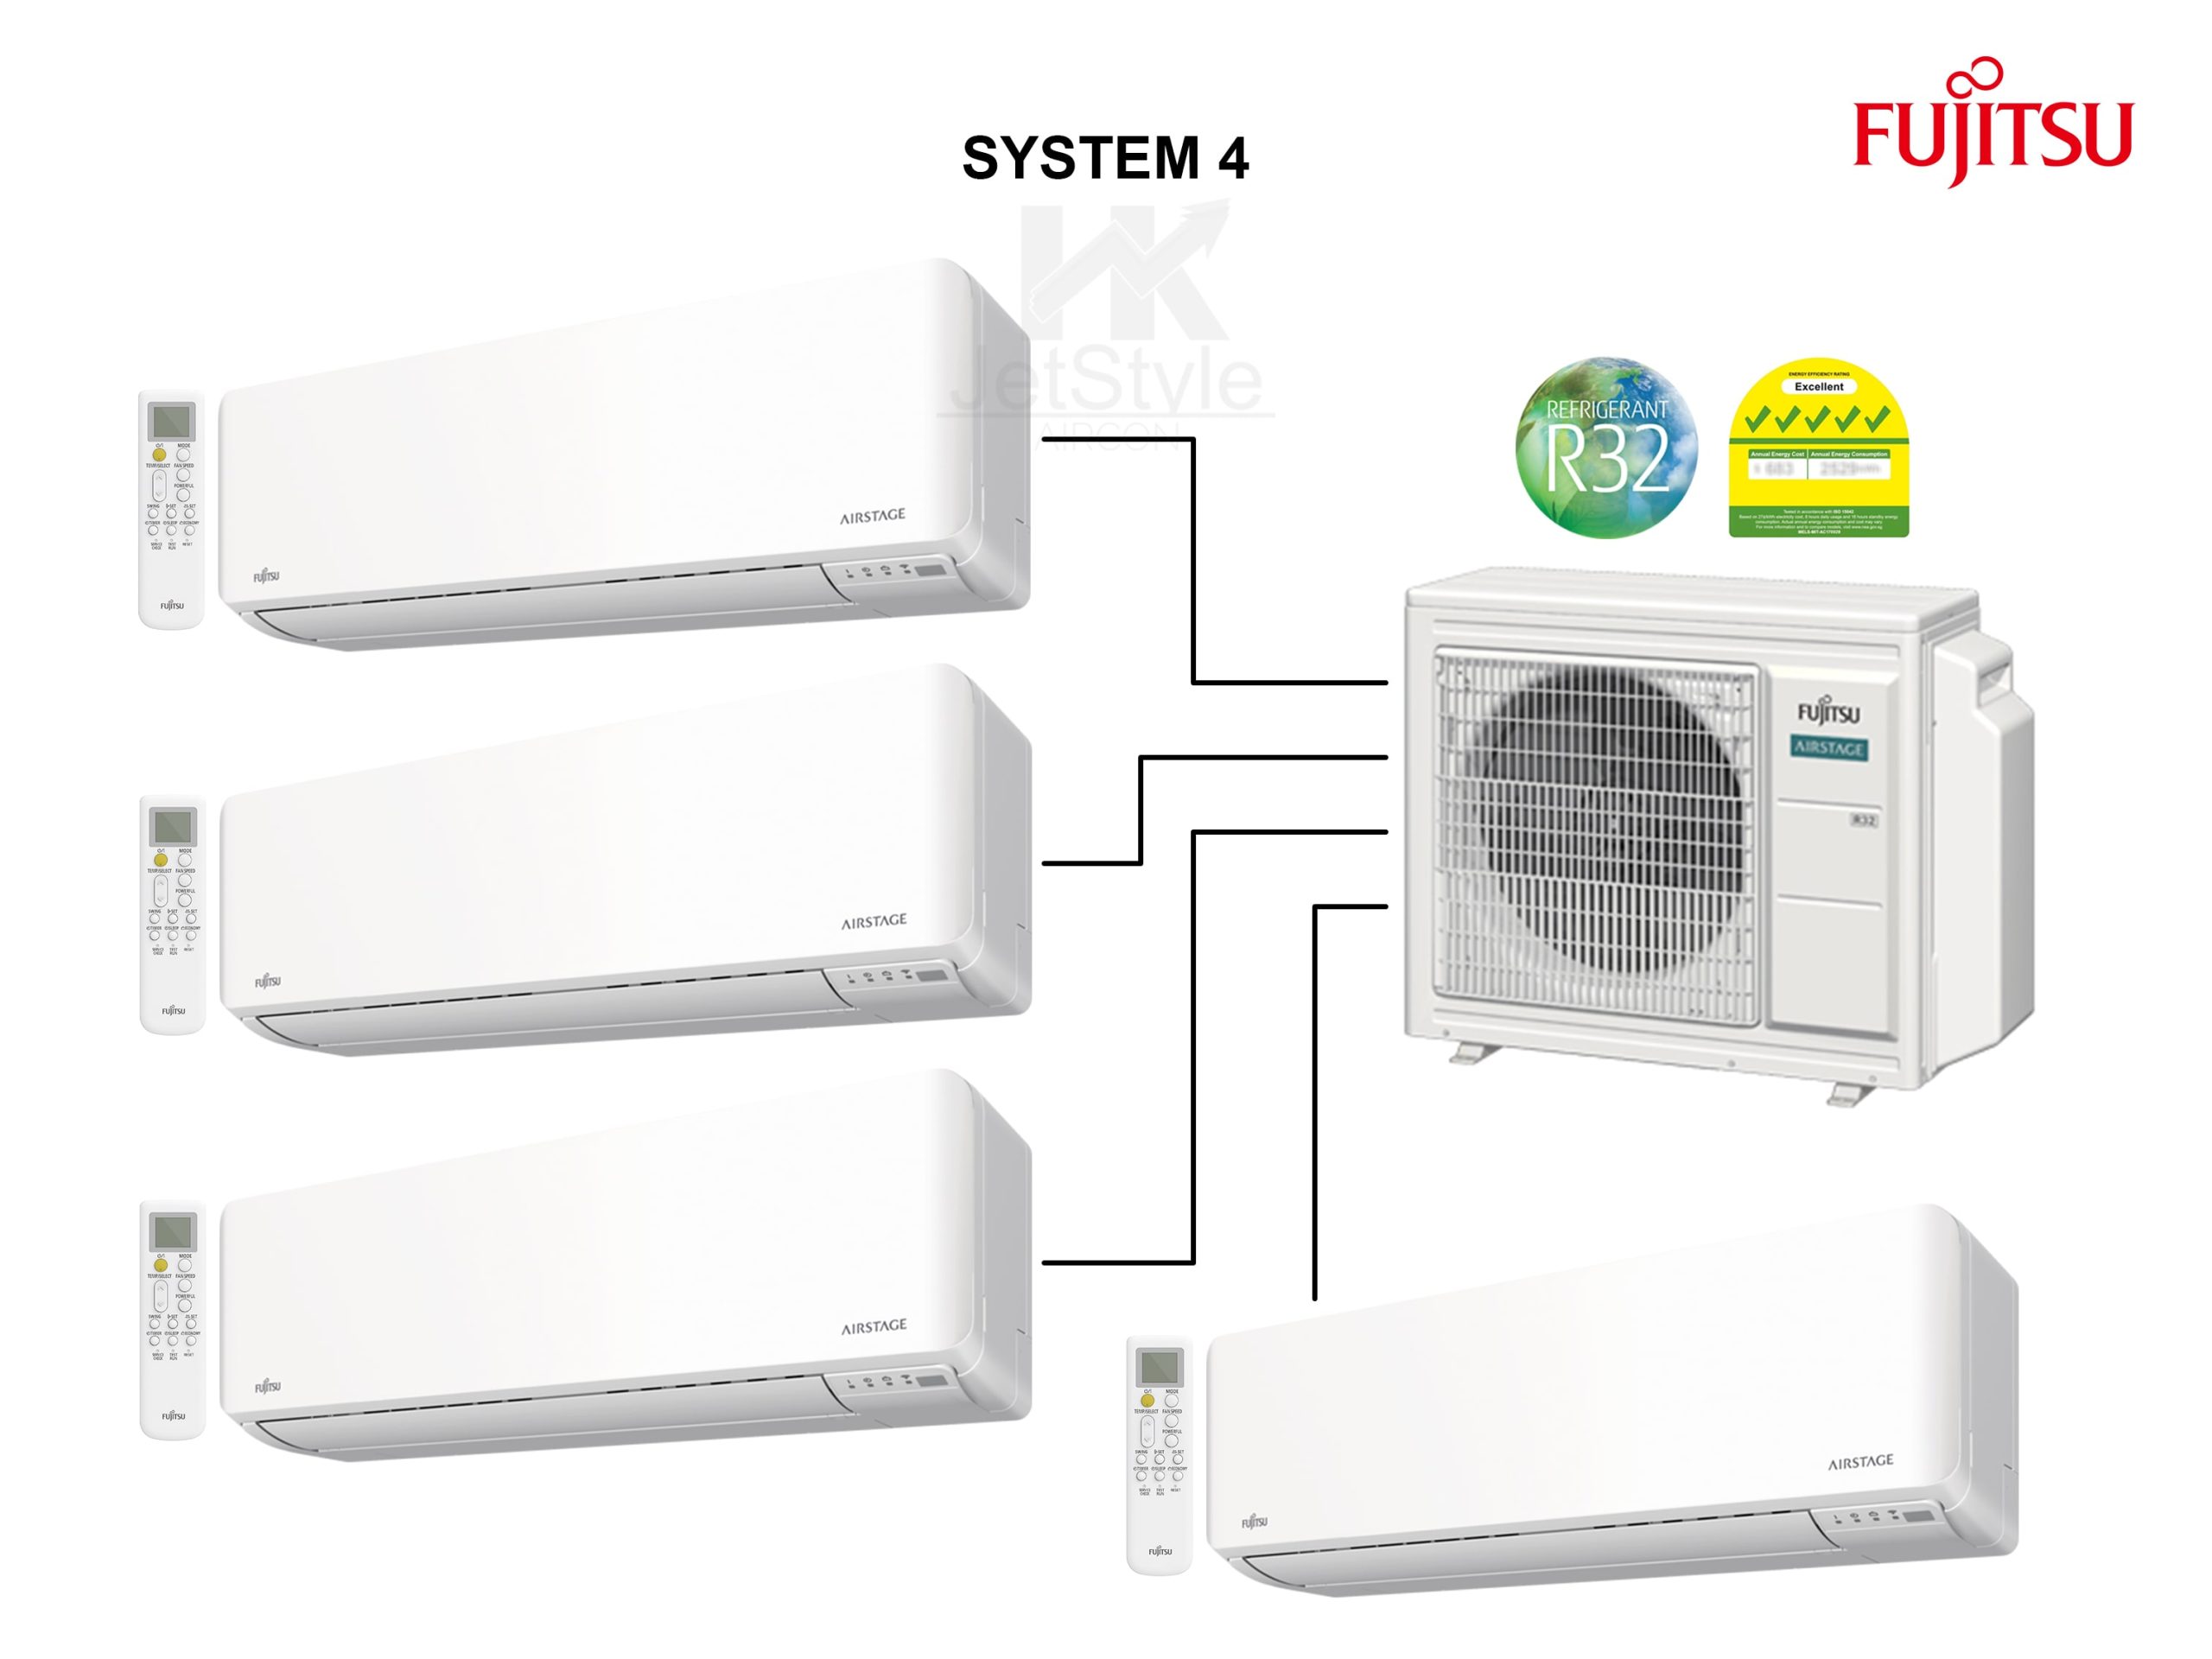 Fujitsu System 4